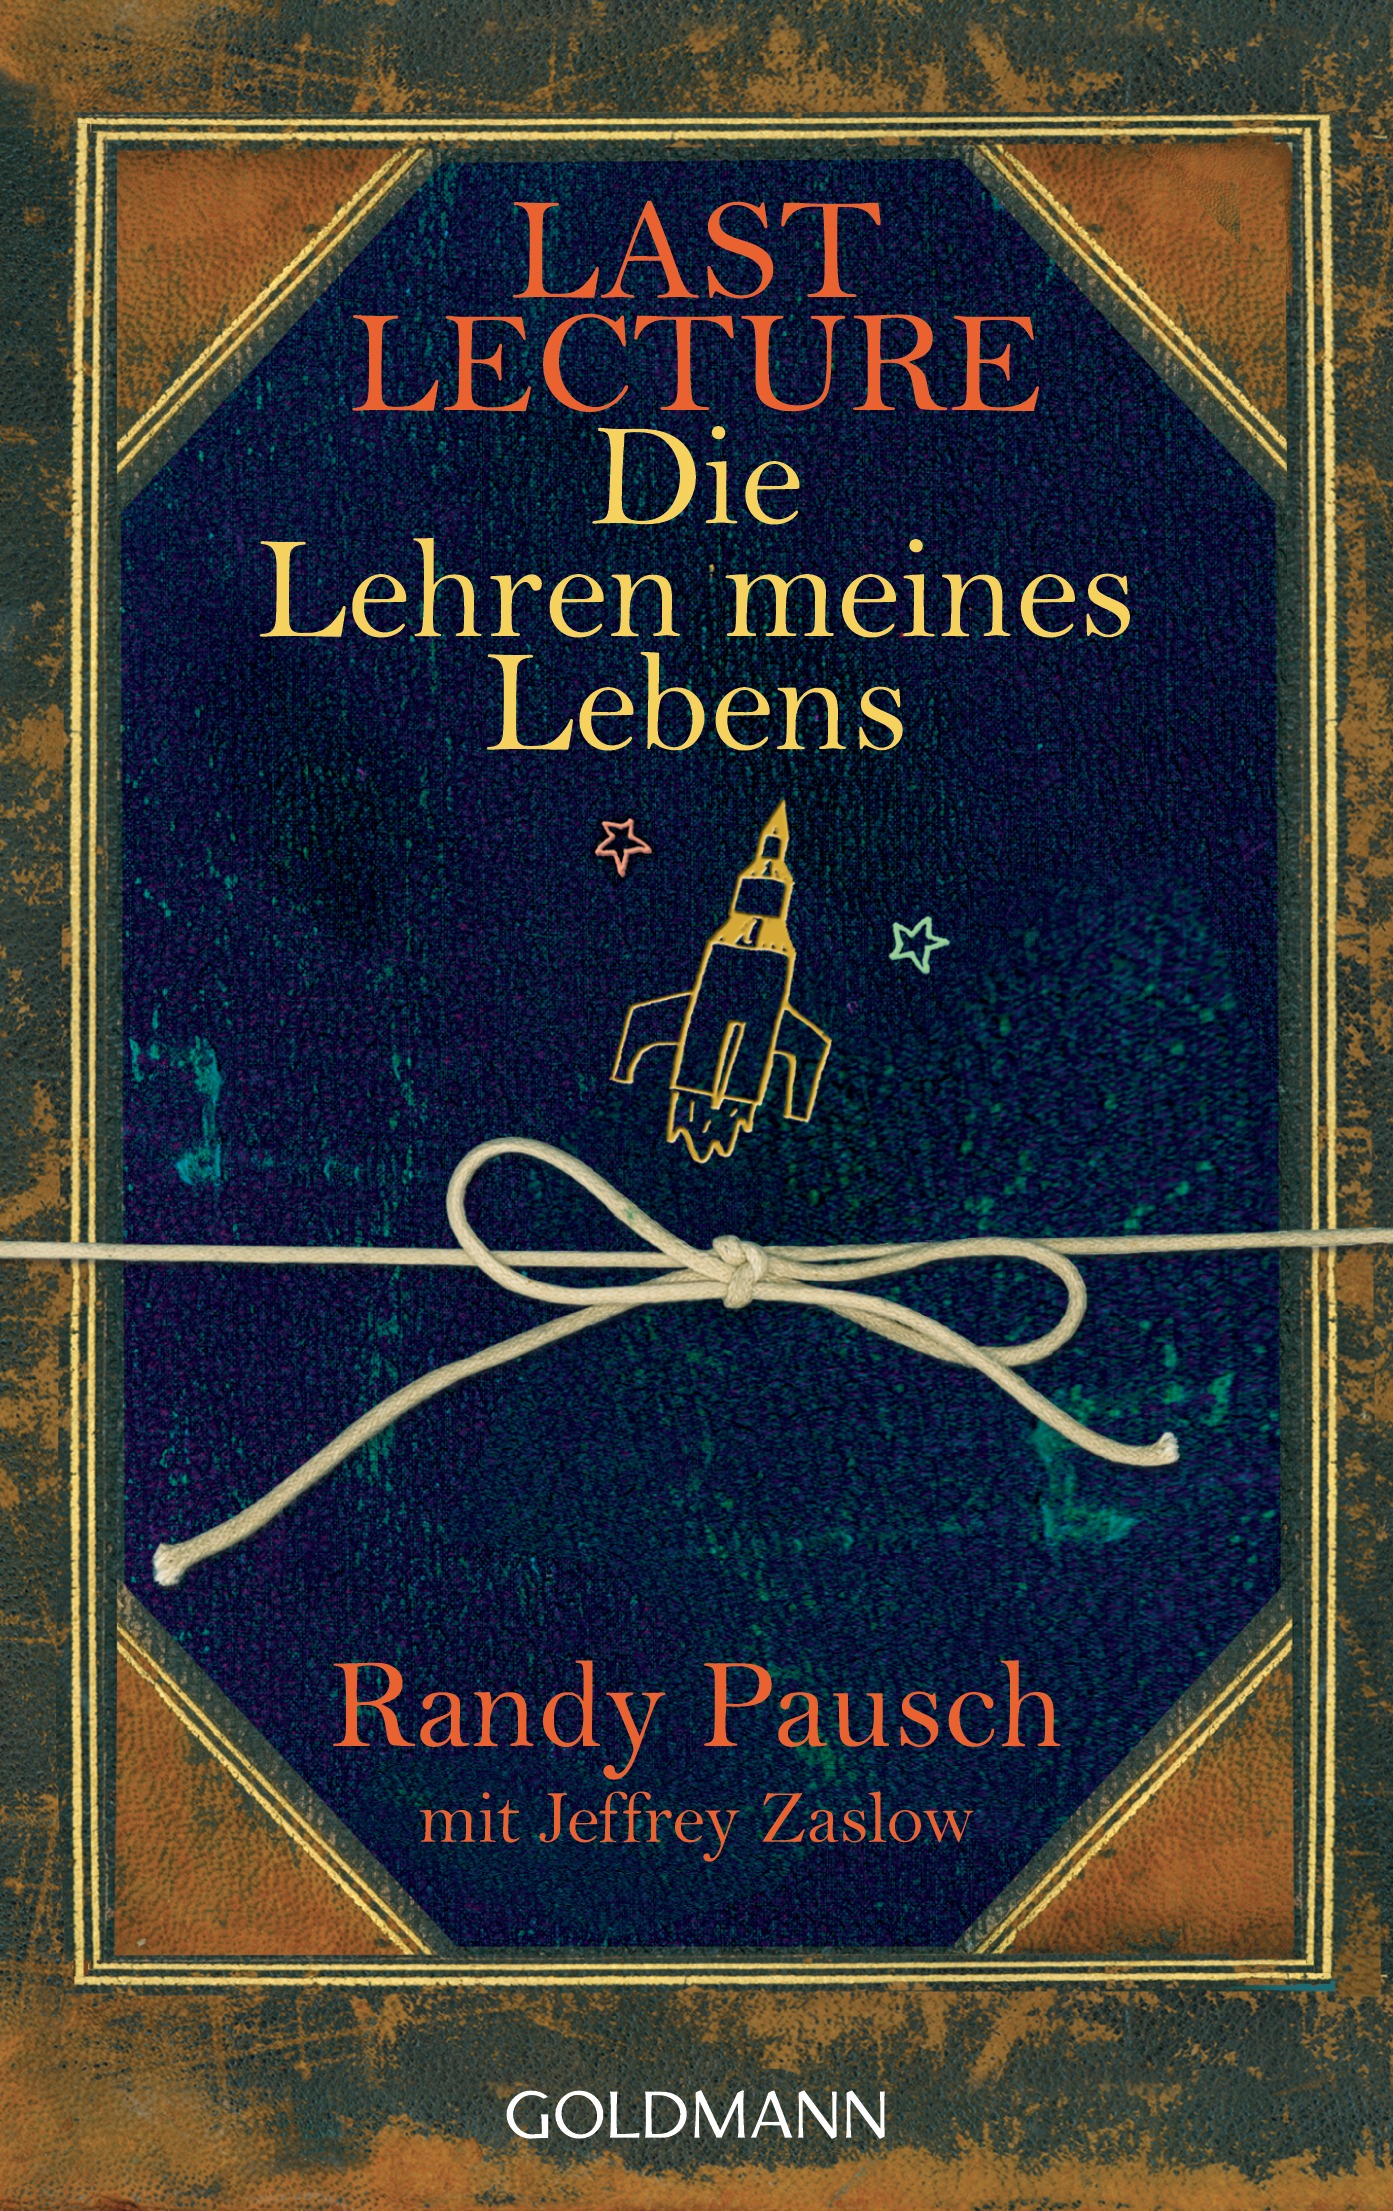 Last Lecture - Die Lehren meines Lebens von Randy Pausch